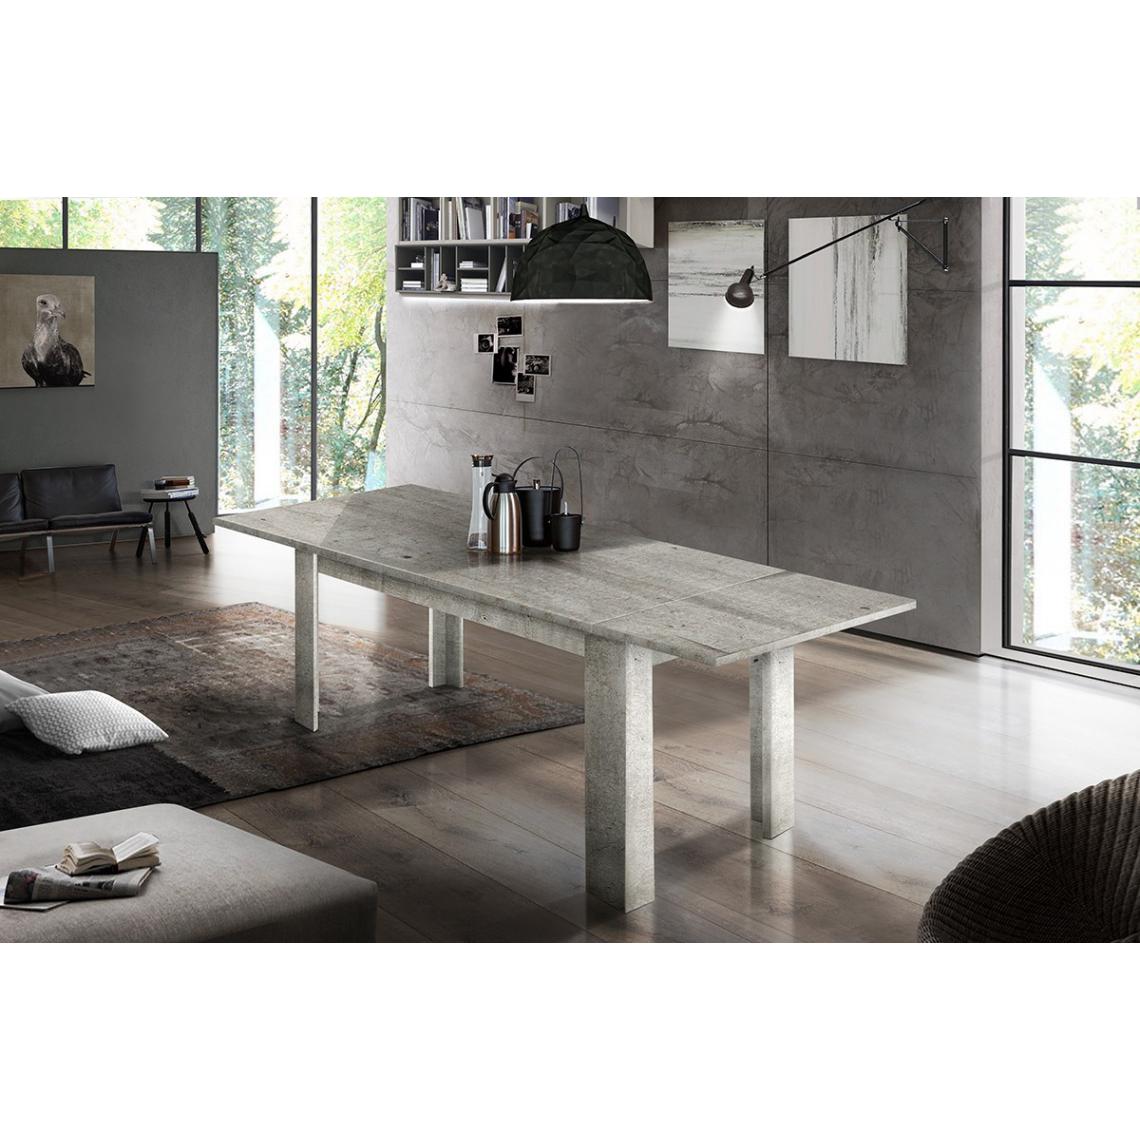 Alter - Table de salle à manger extensible, Made in Italy, Table moderne avec rallonges, Console extensible, 160 / 210x90h75 cm, Couleur ciment - Tables à manger